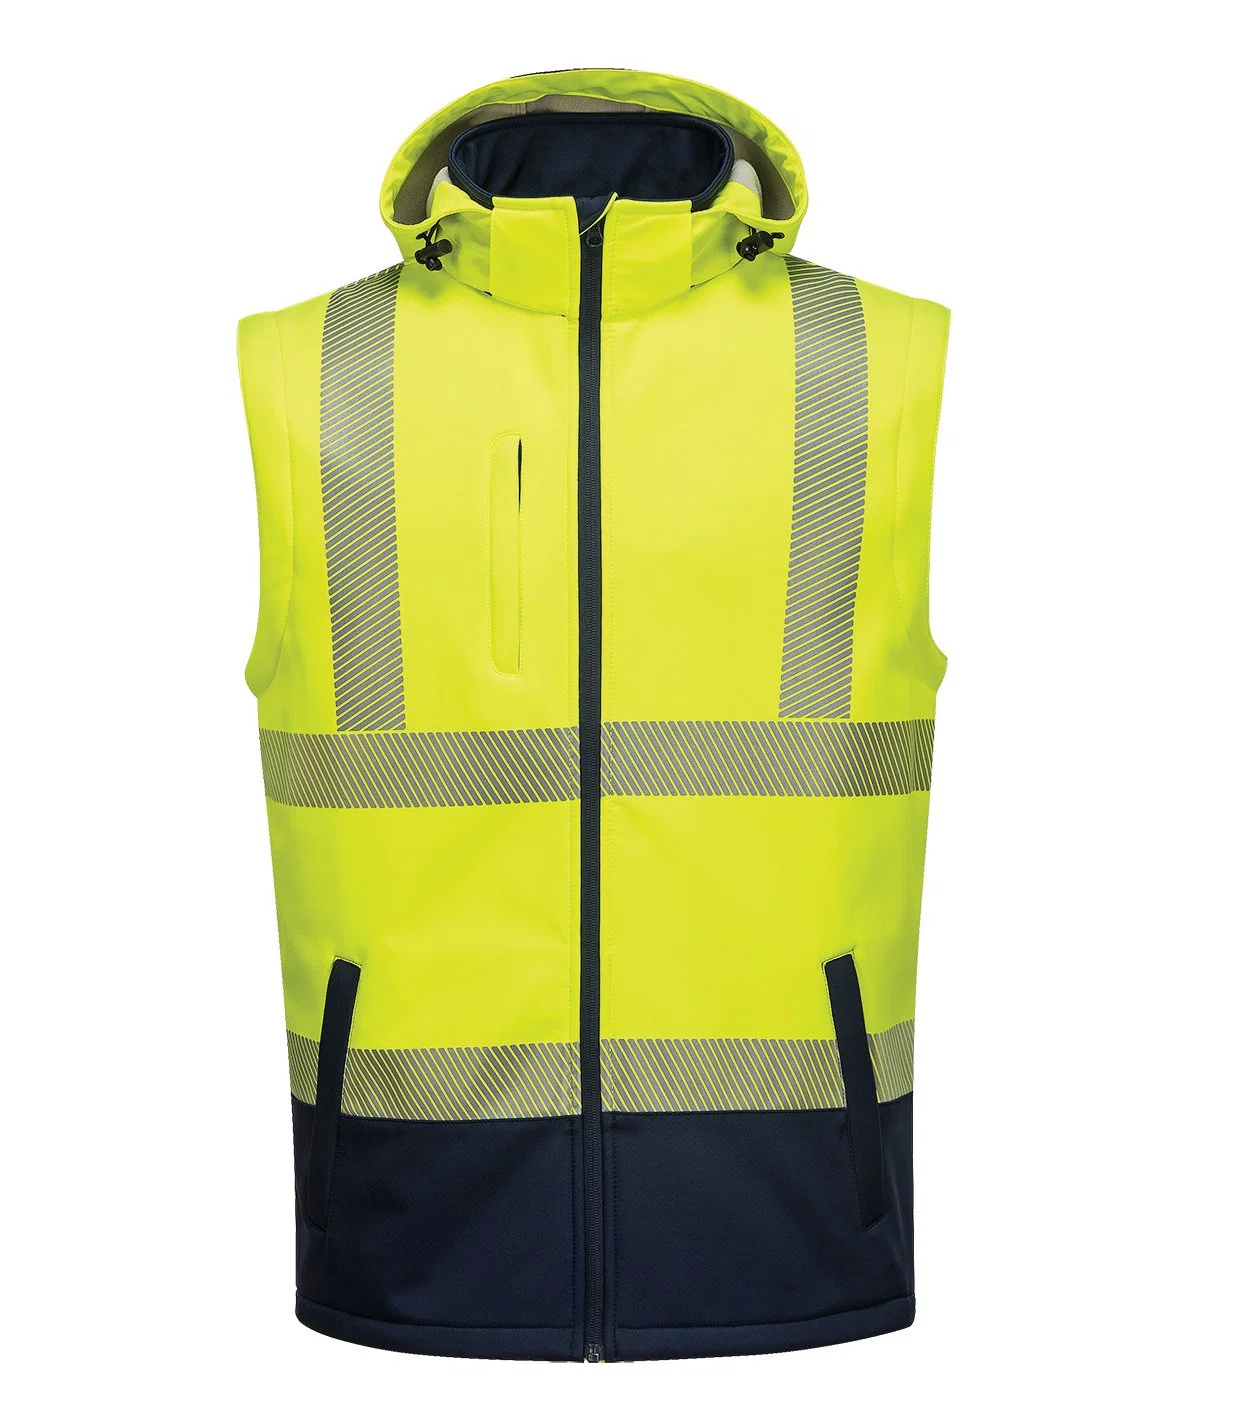 Safety Jacket Working Men Workwear Uniform